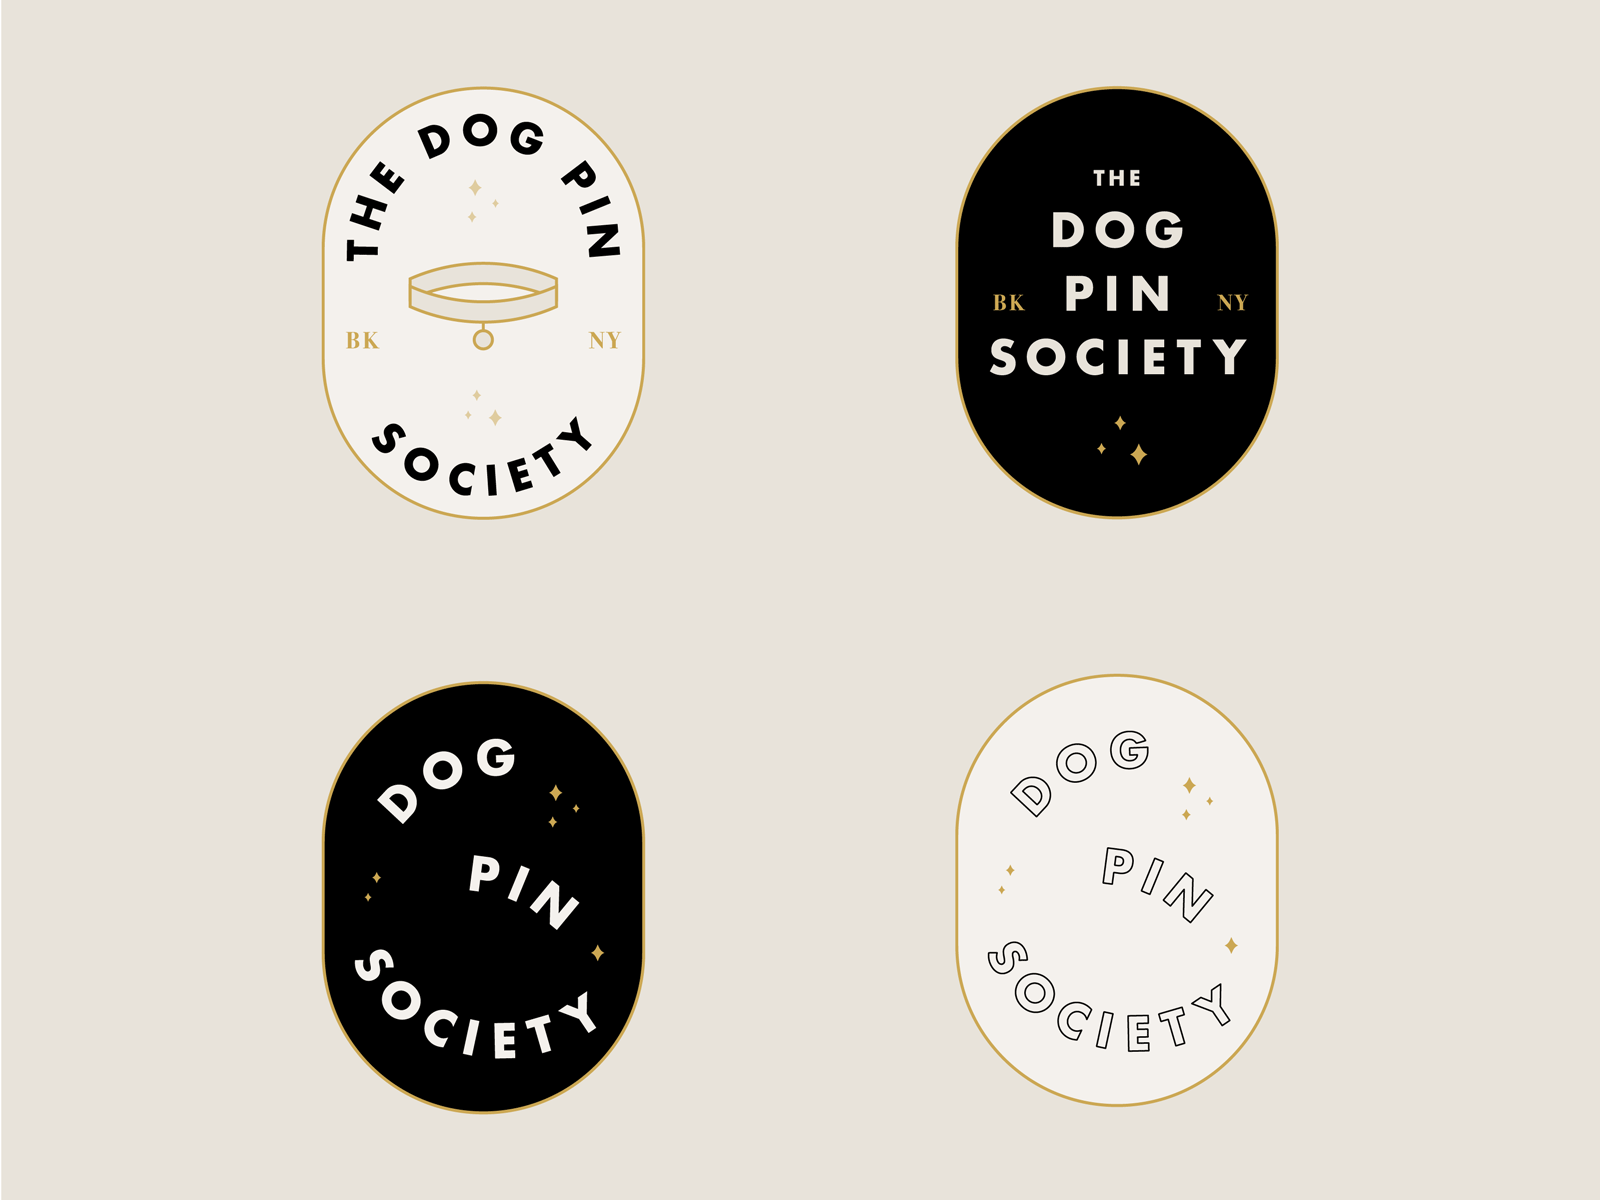 Dog Pin Society branding